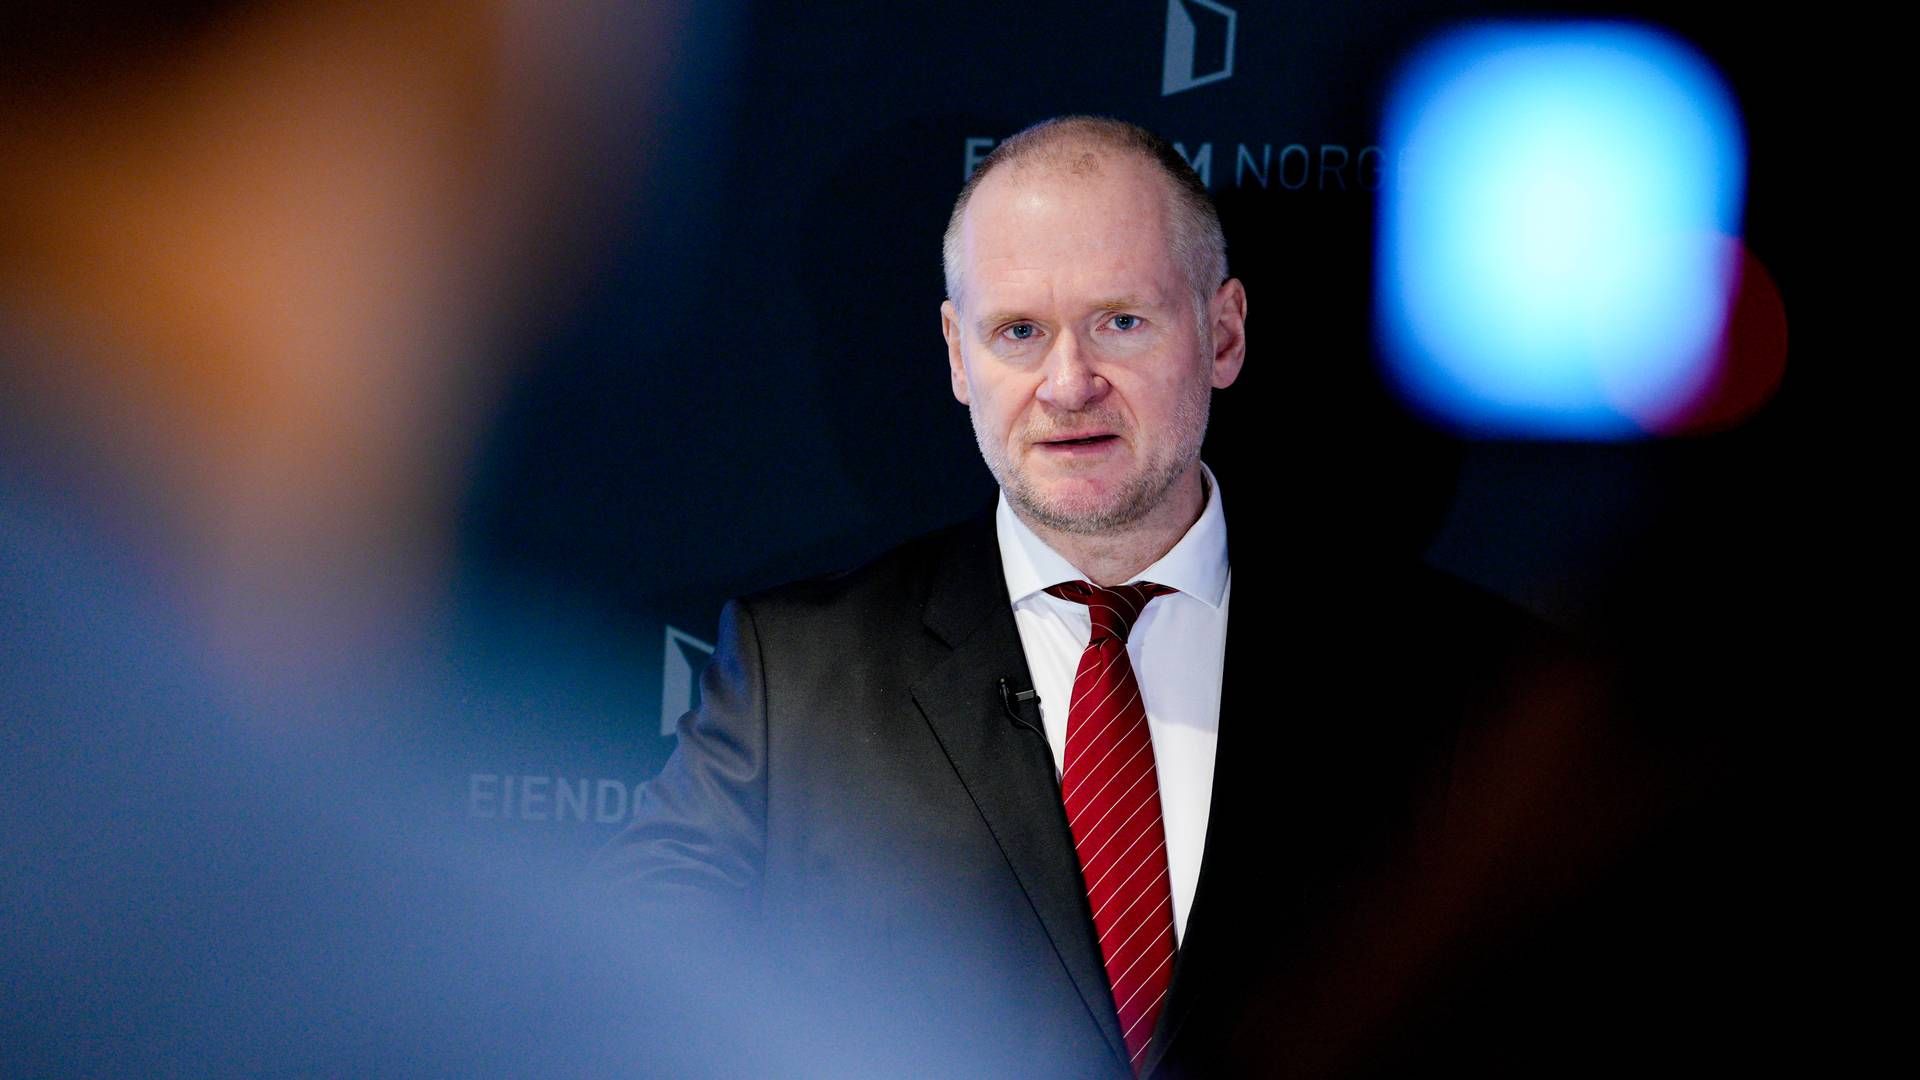 BOLIG: Administrerende direktør i Eiendom Norge, Henning Lauridsen presenterte statistikk for boligprisene onsdag. | Foto: Javad Parsa / NTB